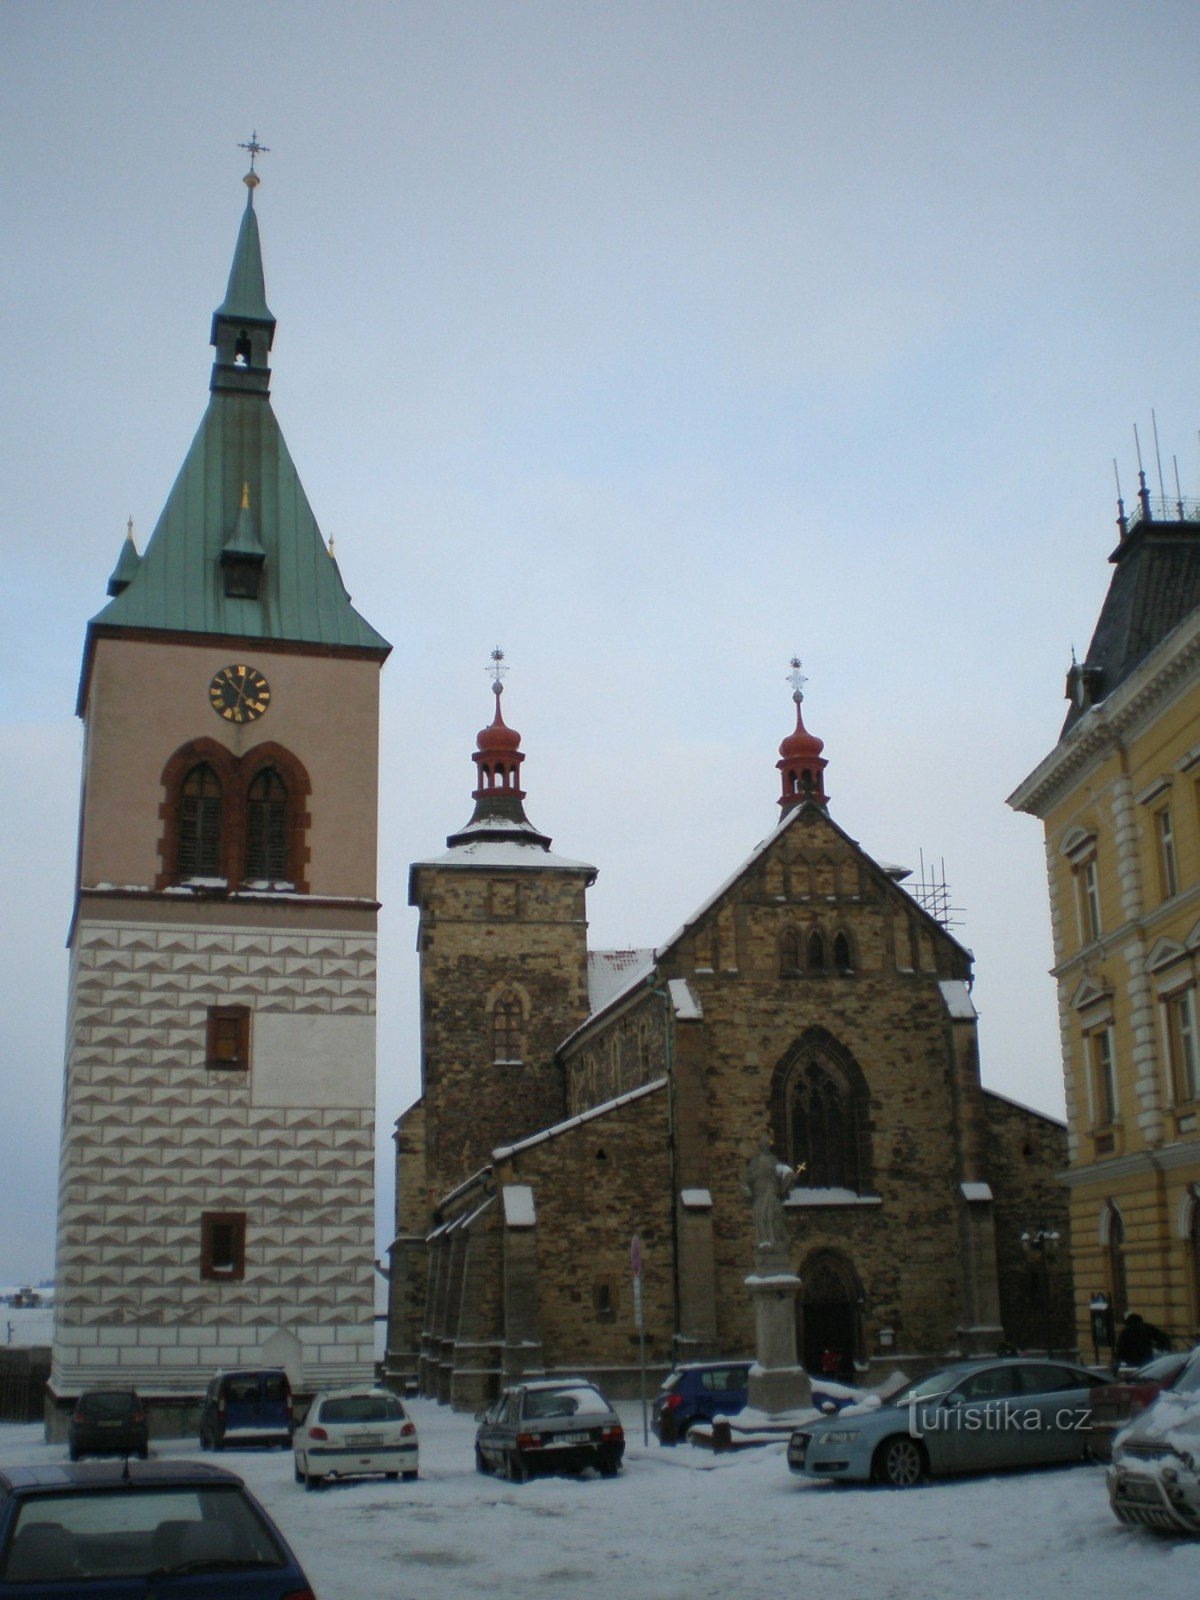 Palę - kościół św. Stephen z dzwonnicą